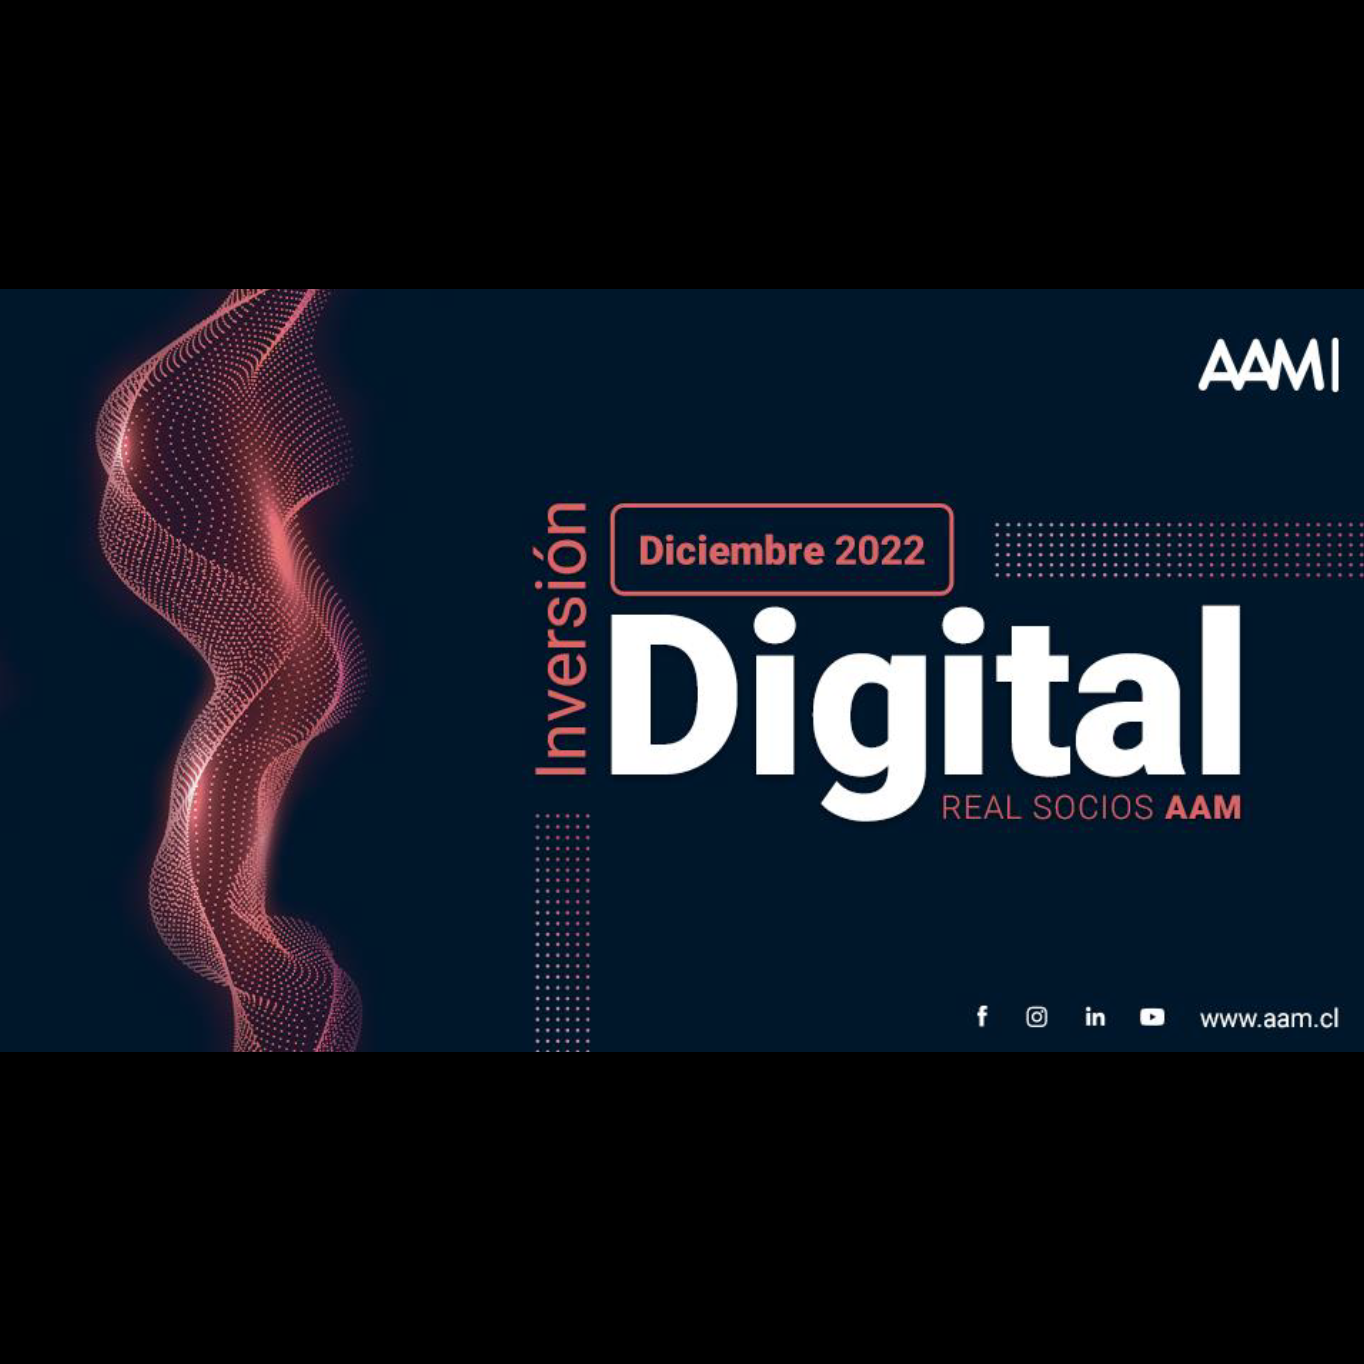 Inversión digital real socios AAM – diciembre 2022